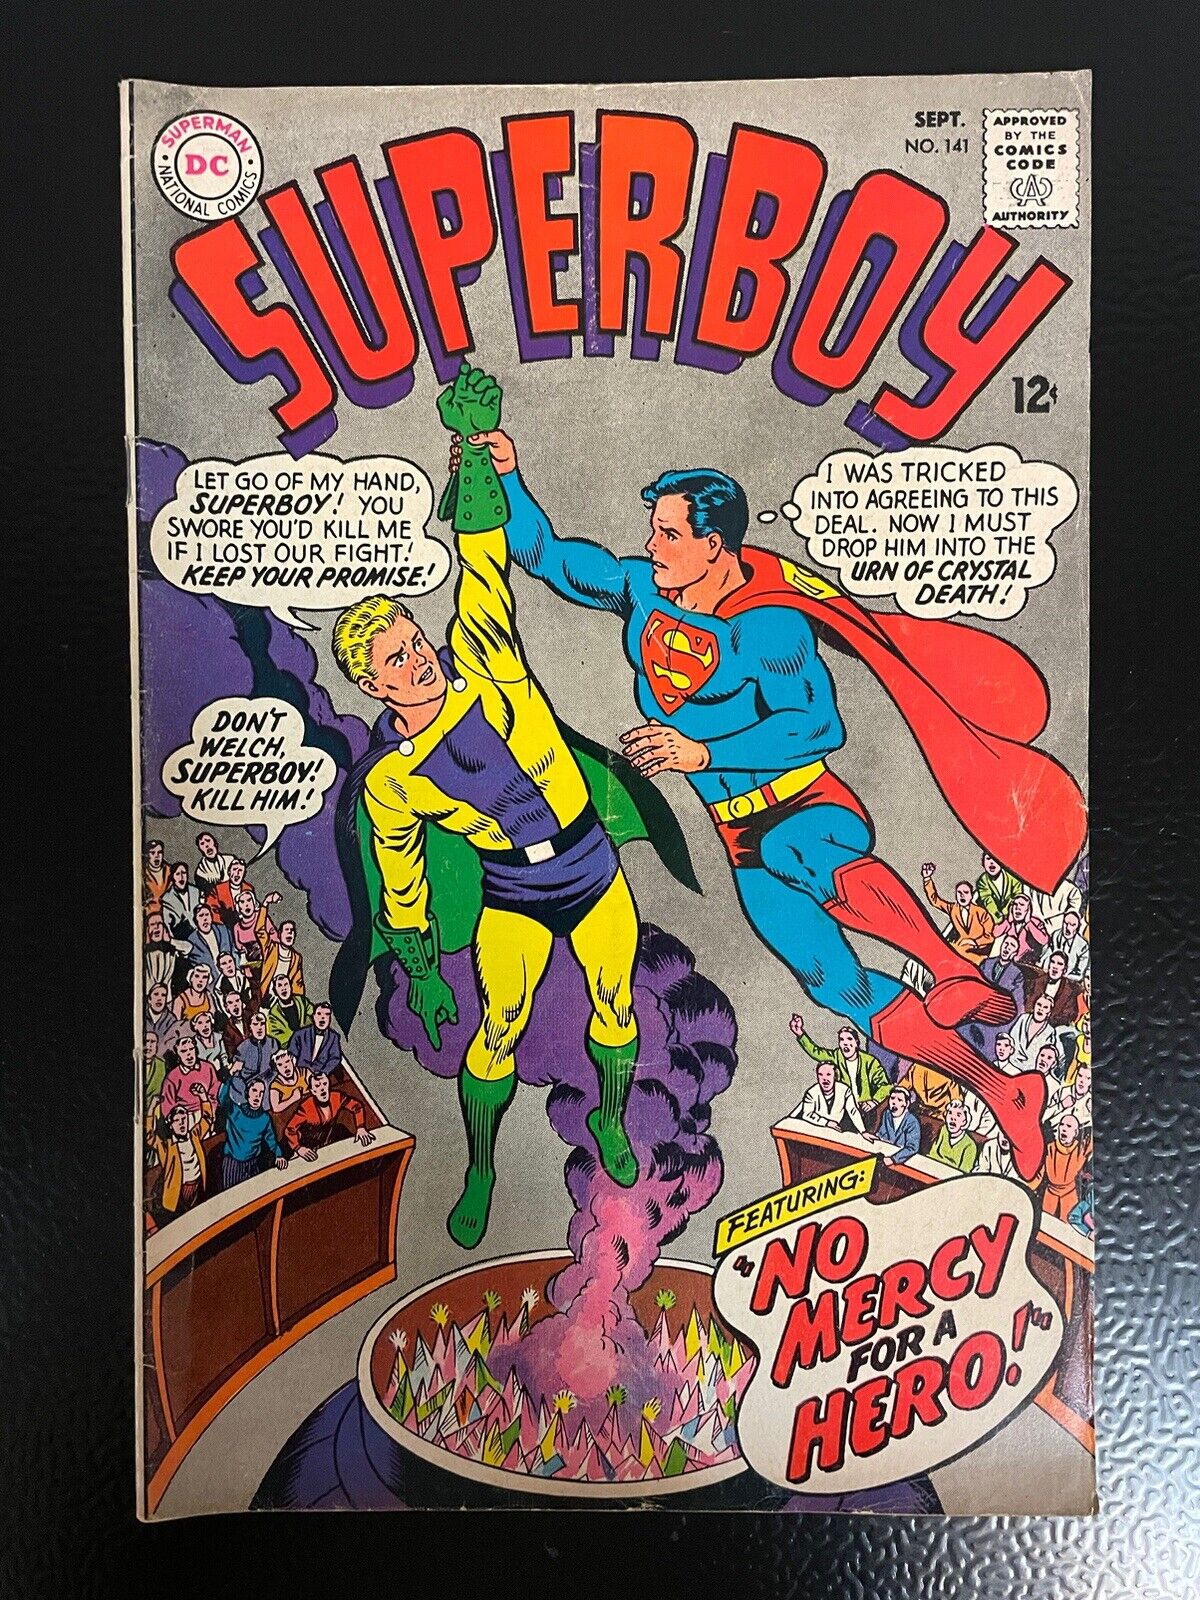 Superboy # 141 Sept 1967